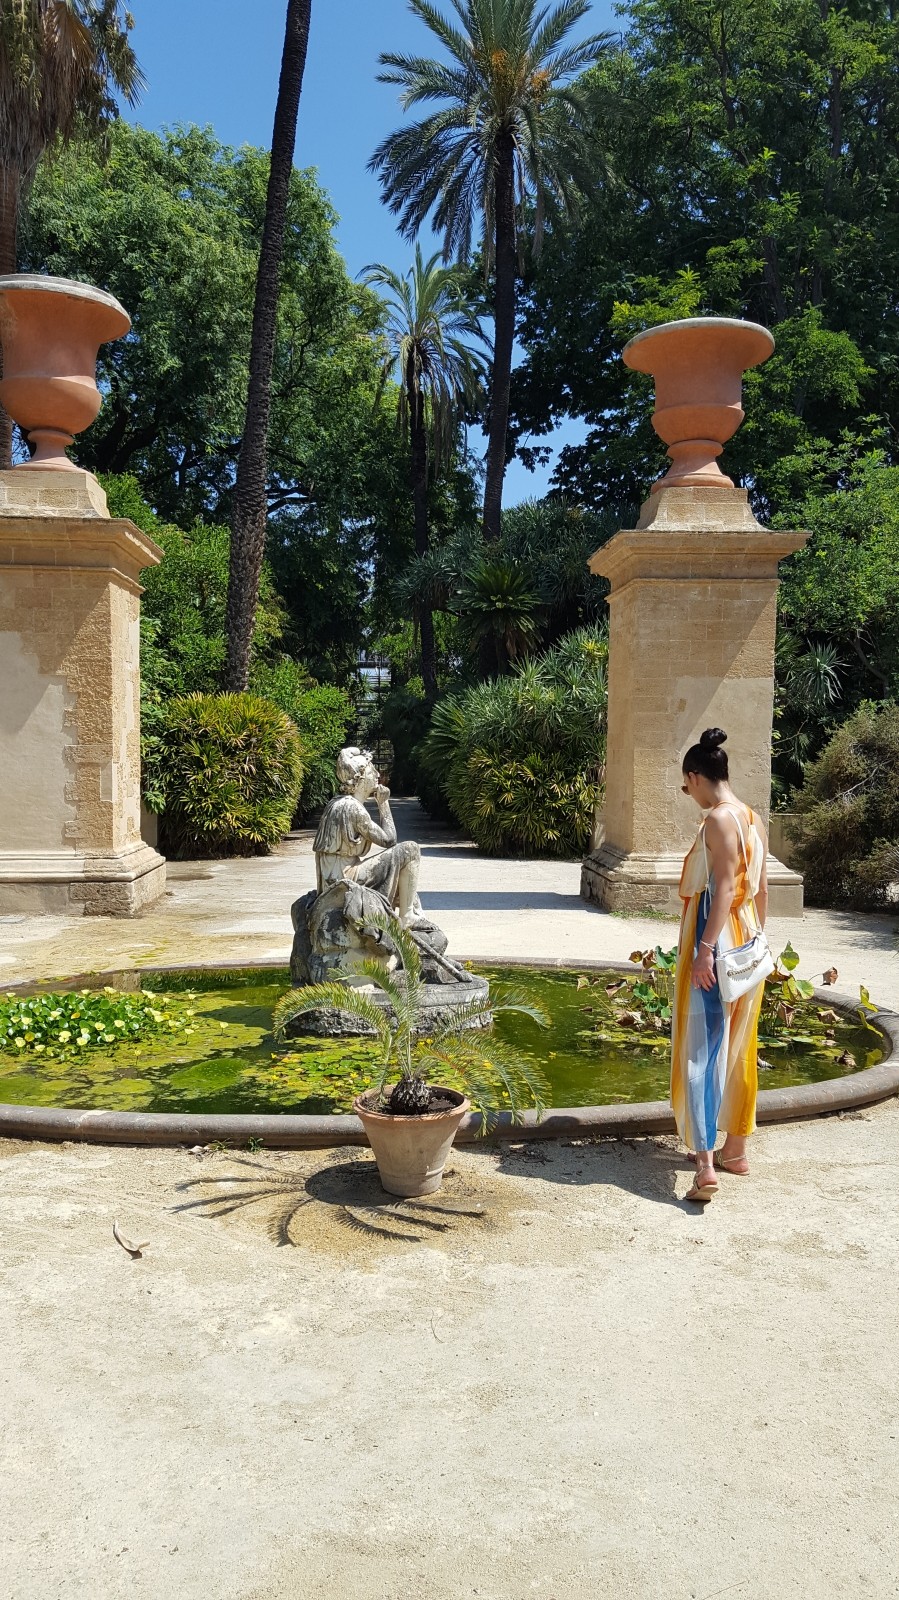 Fountain with girl in Orto botanico di Palermo